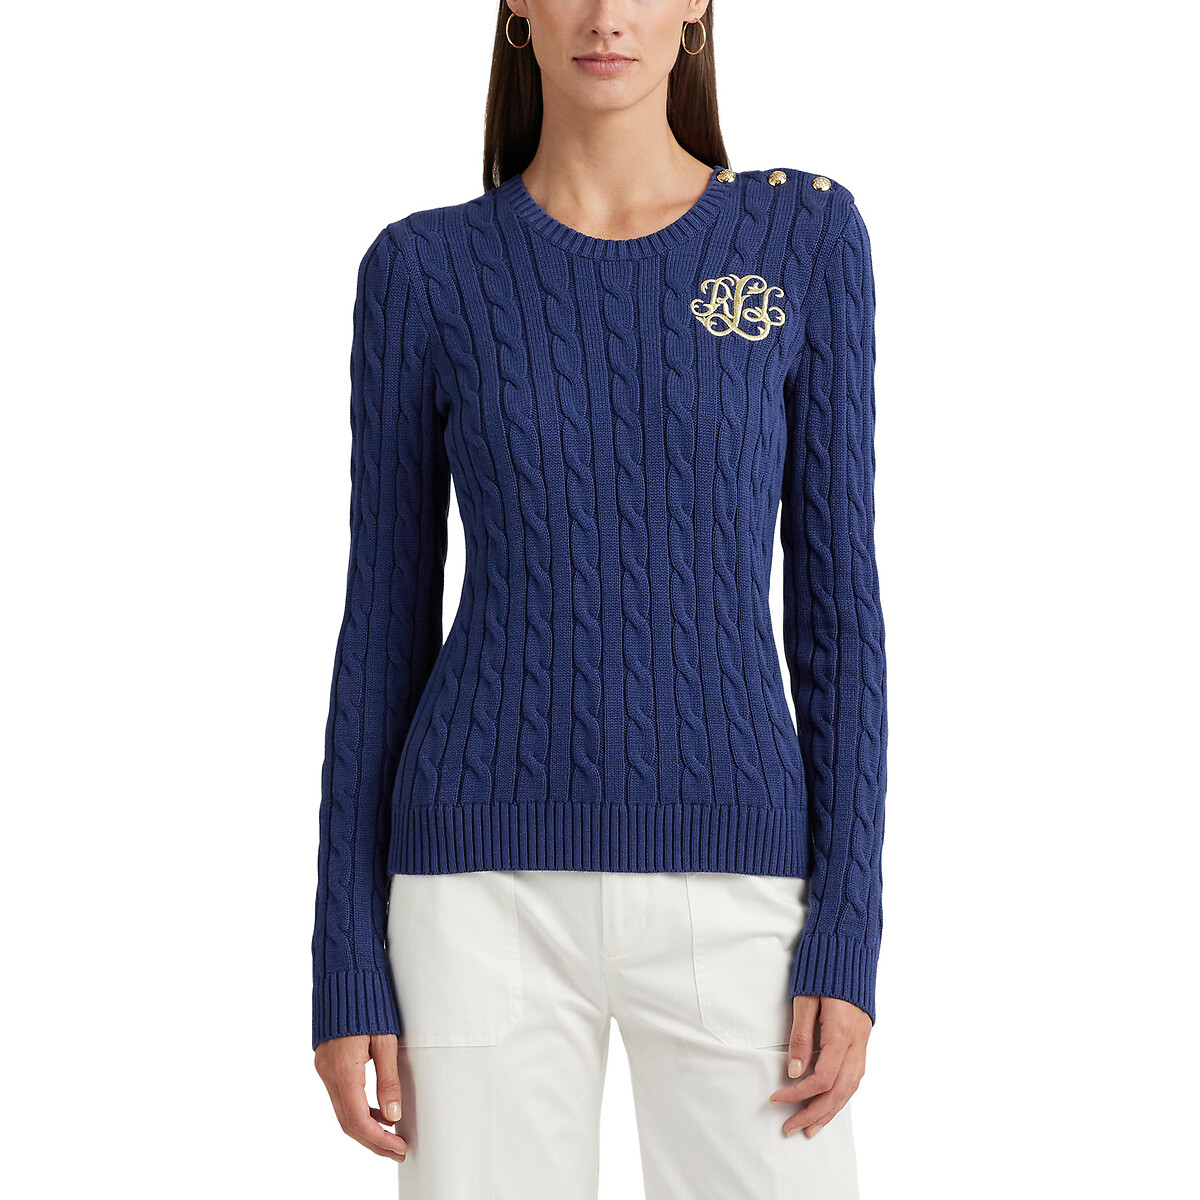 Пуловер с круглым вырезом из витого трикотажа MONTIVA XS синий пуловер с круглым вырезом signature из витого трикотажа xl синий